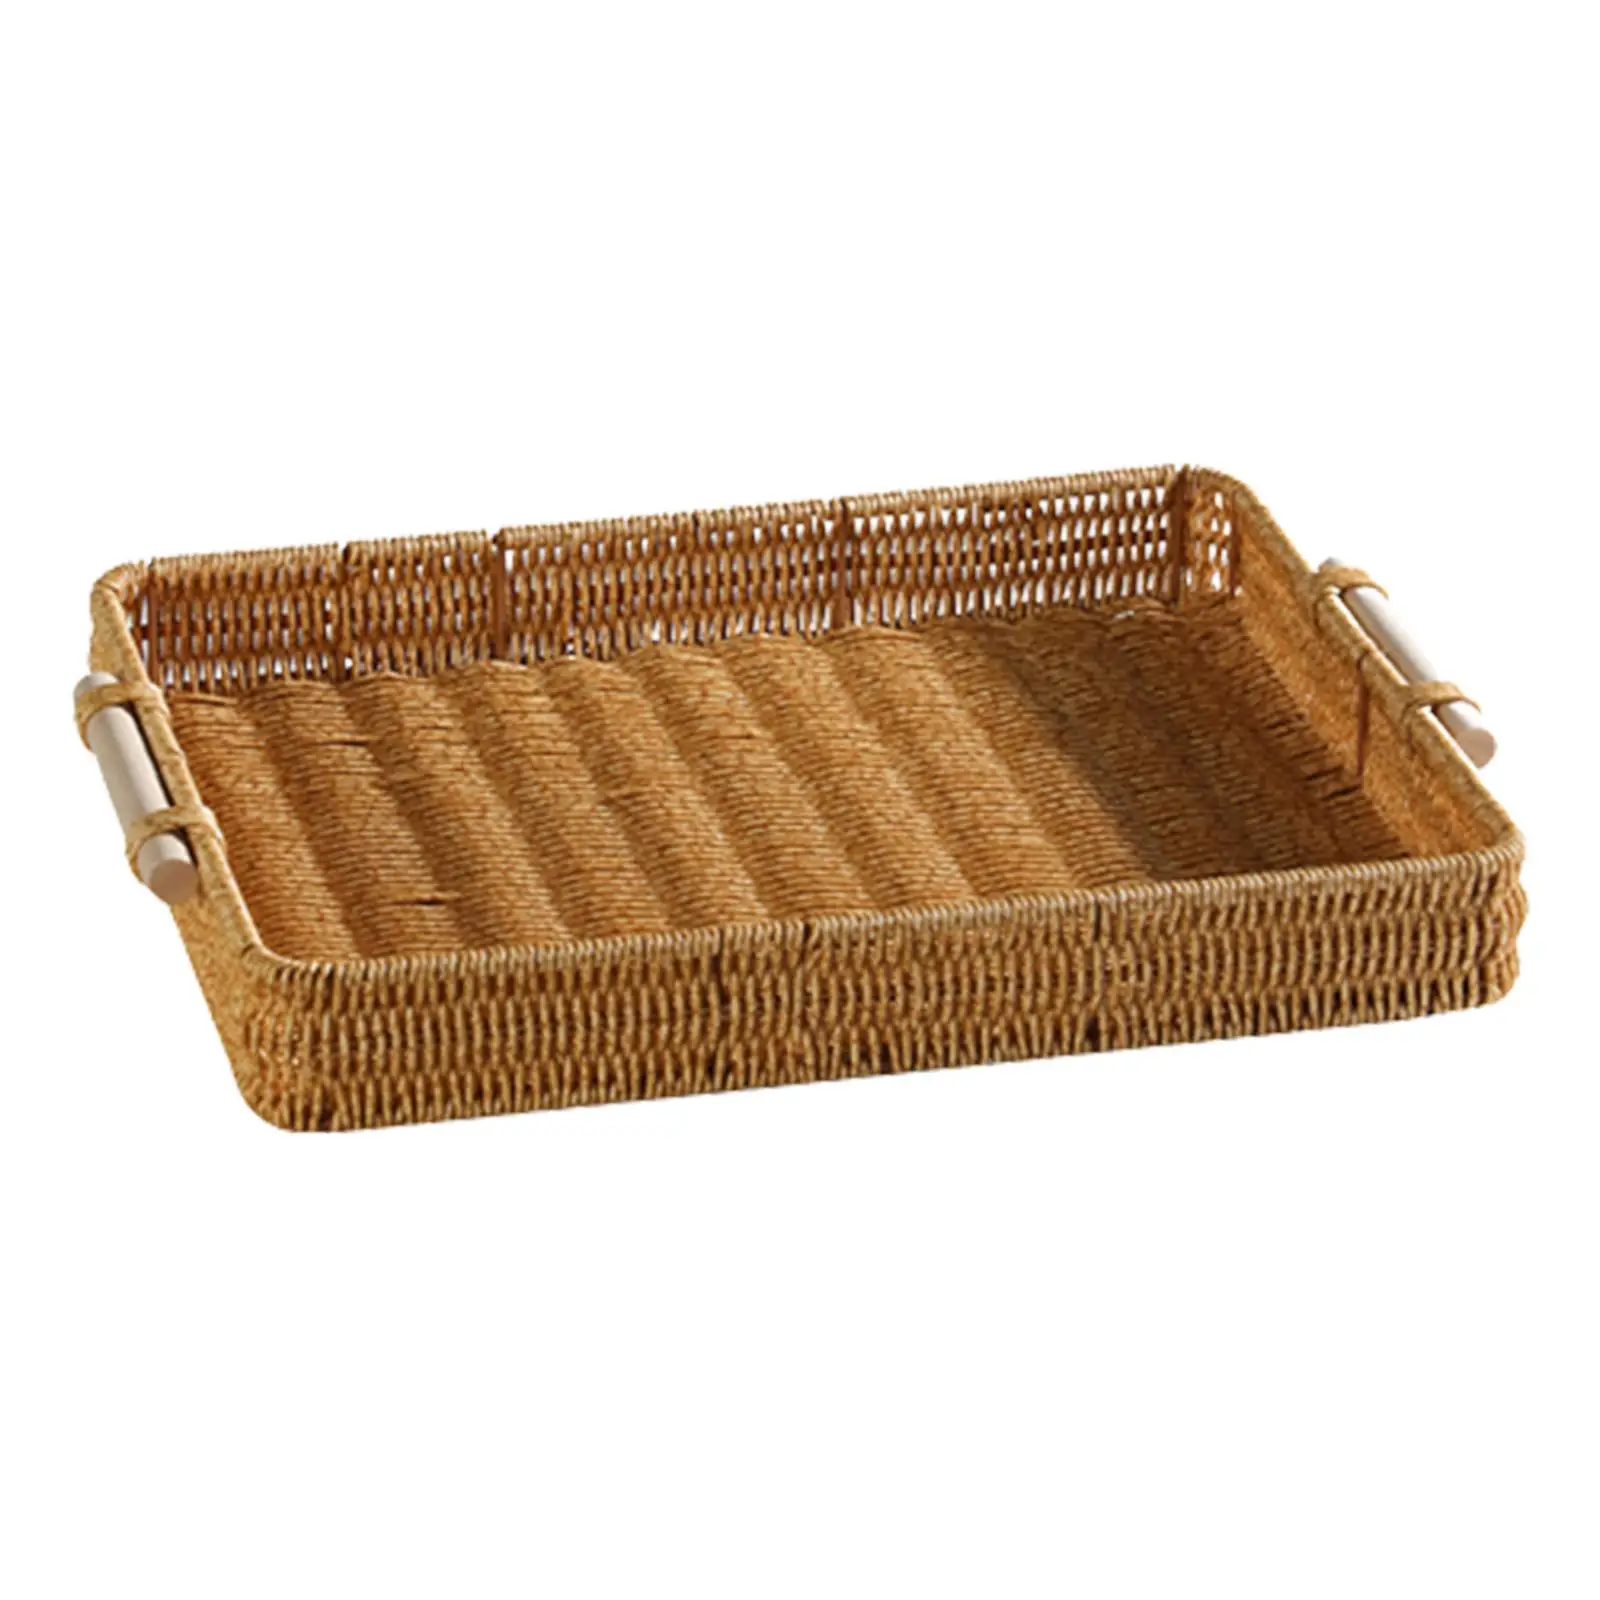  Rattan Weaving Basket, Fruit Baskets Platter, Hand Basket for Desk Bedroom Living Room Home